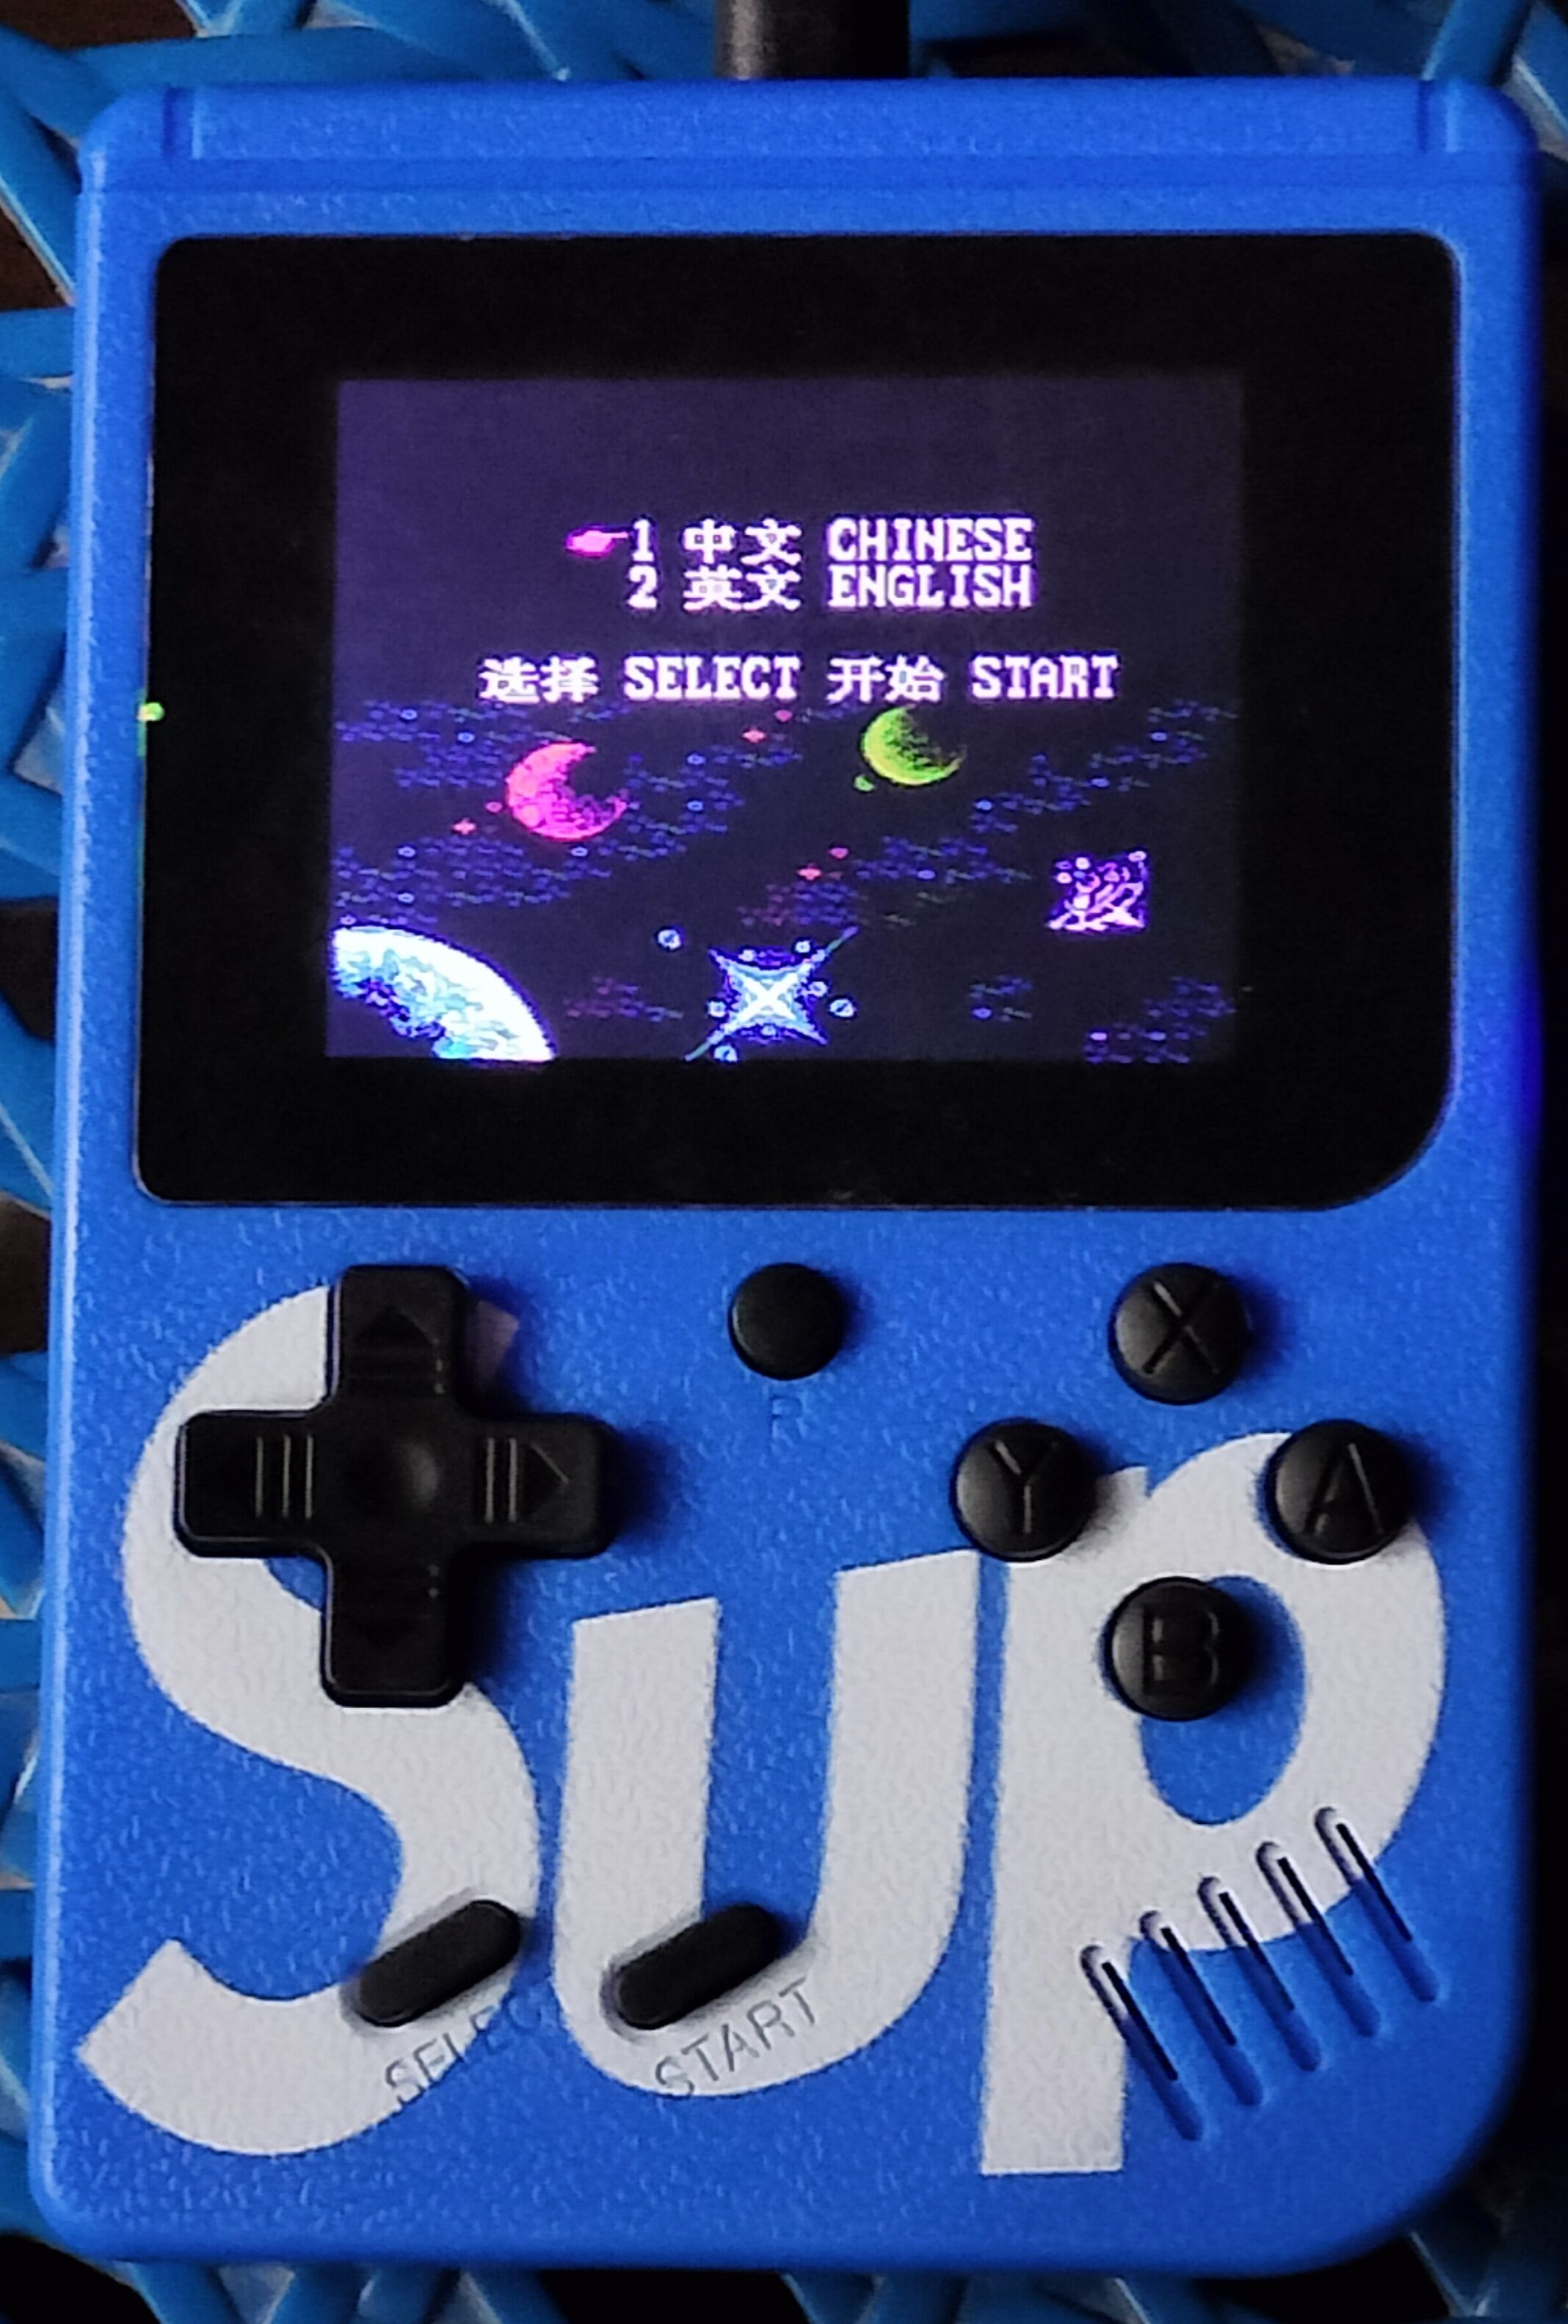 SUP Game Box – 400 in 1 Retro Console